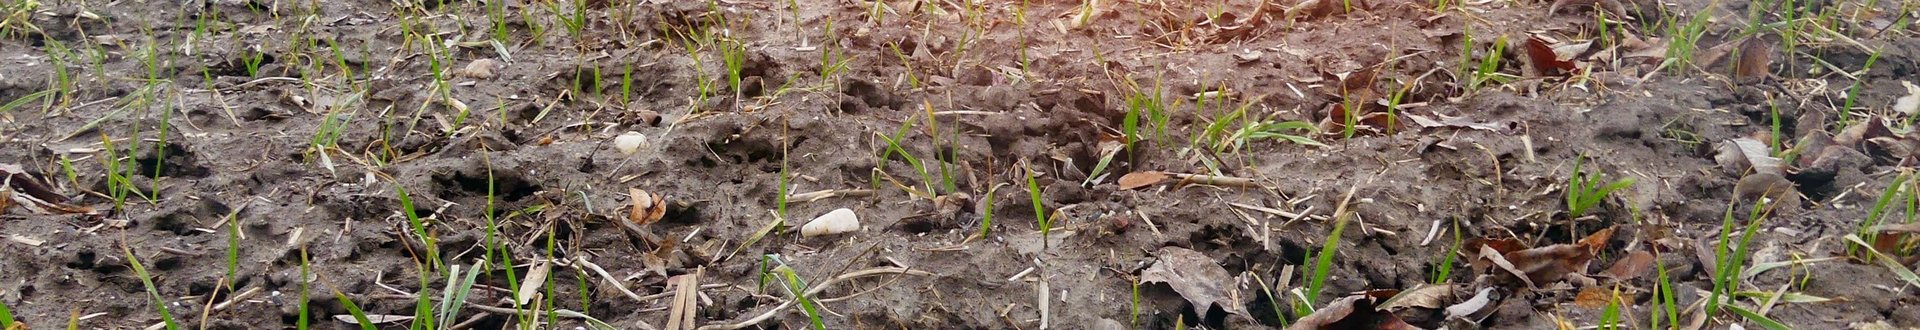 Feld mit nassem Boden und nur kleinen Getreidepflanzen